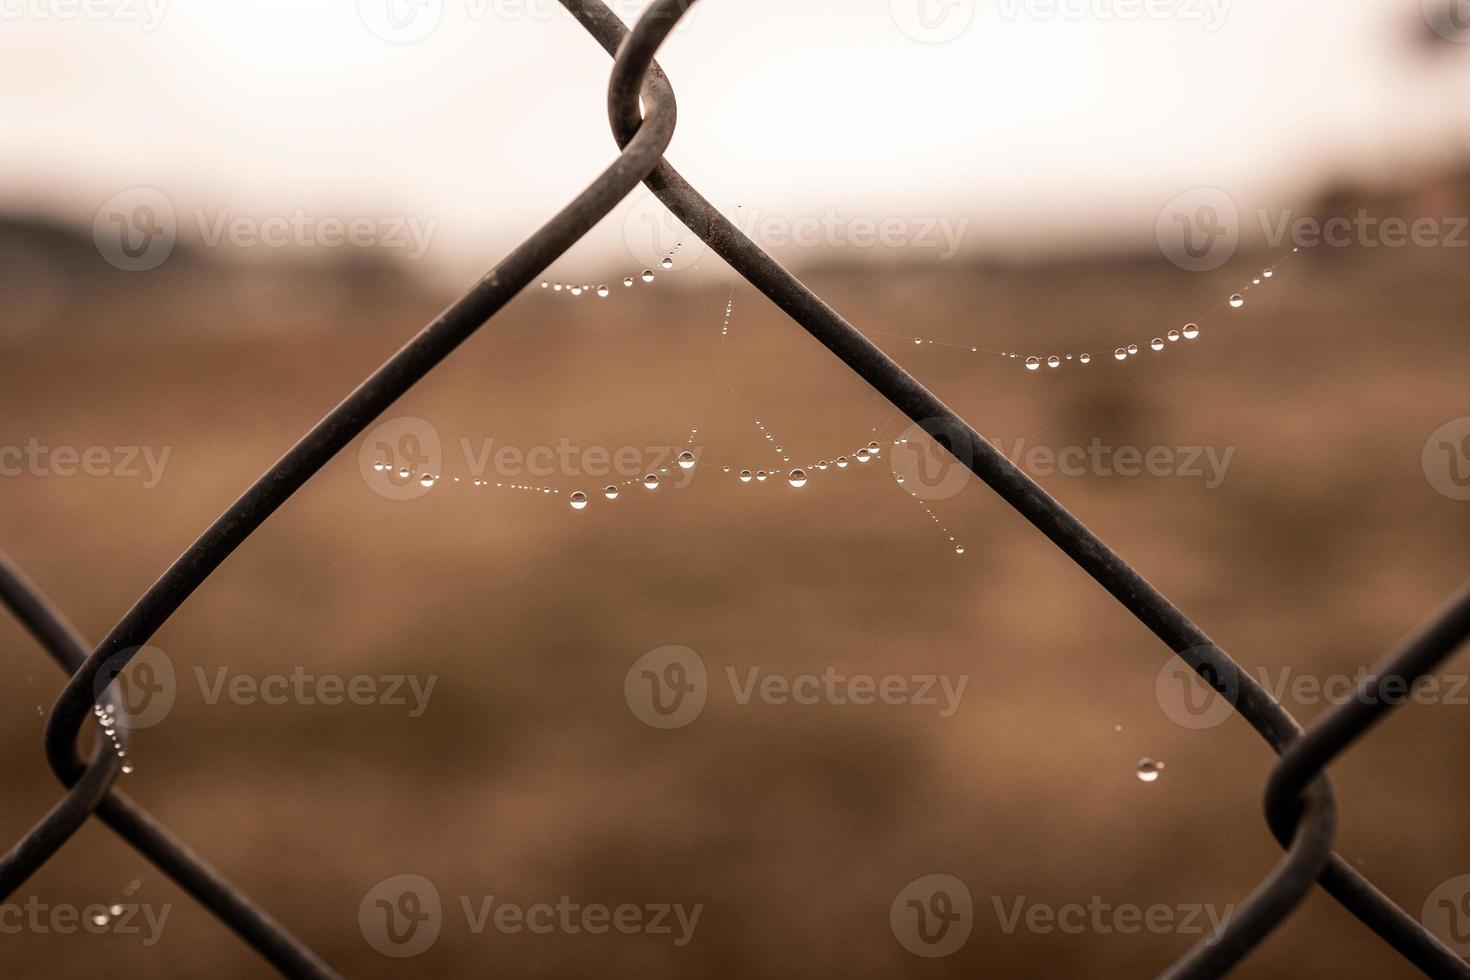 pequeno delicado água gotas em uma aranha rede dentro fechar-se em uma nebuloso dia foto